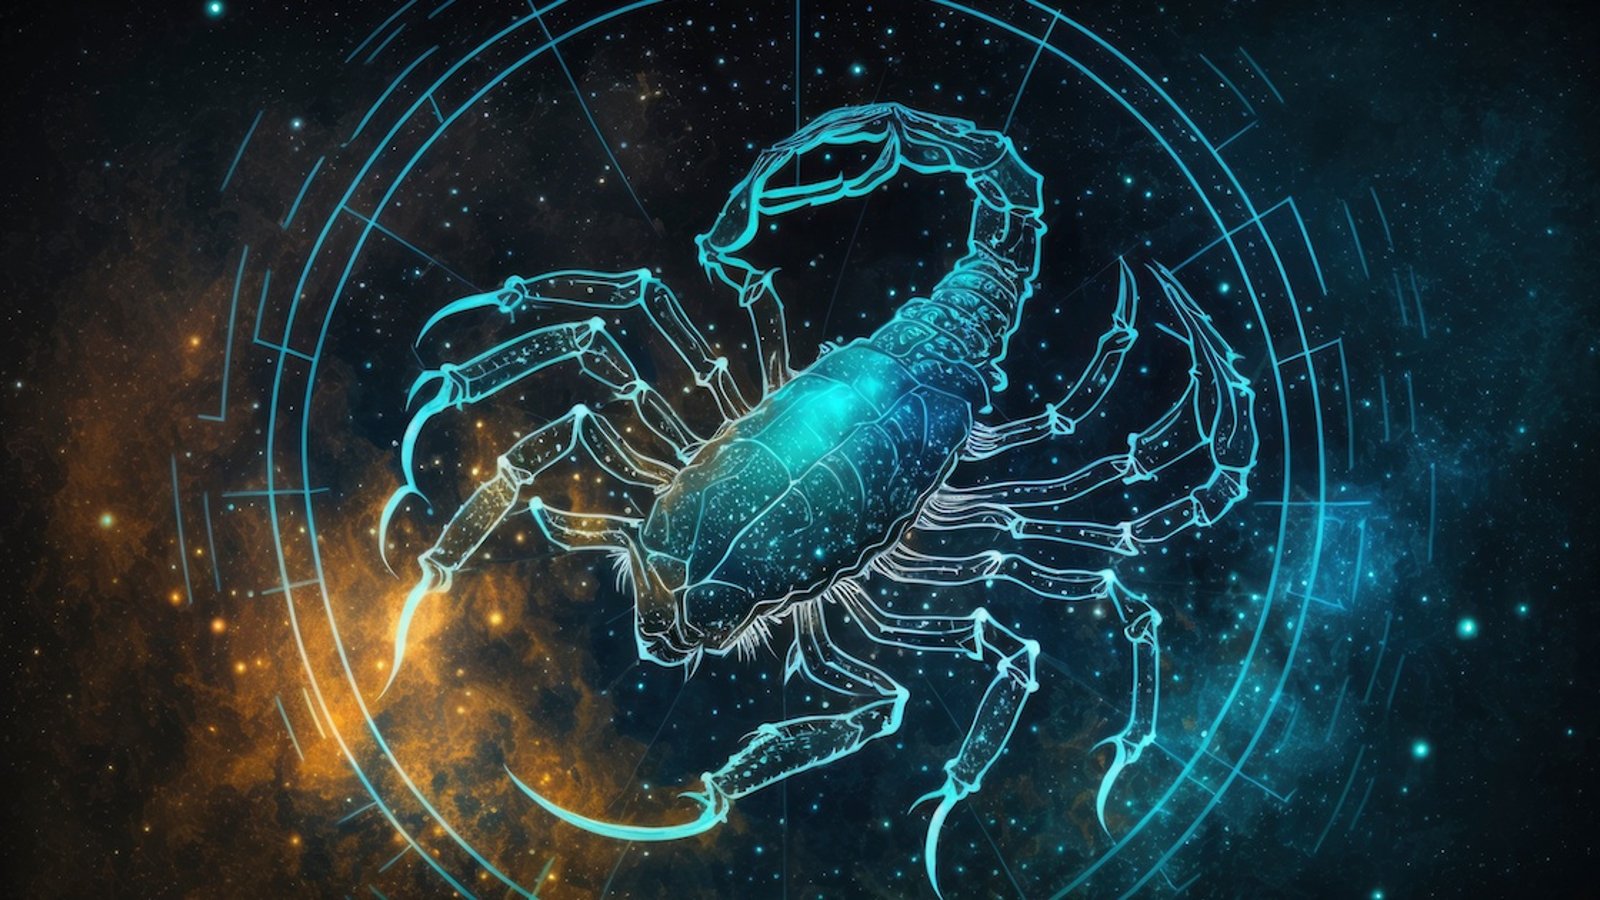 Les pires défauts du Scorpion et ses plus grandes qualités